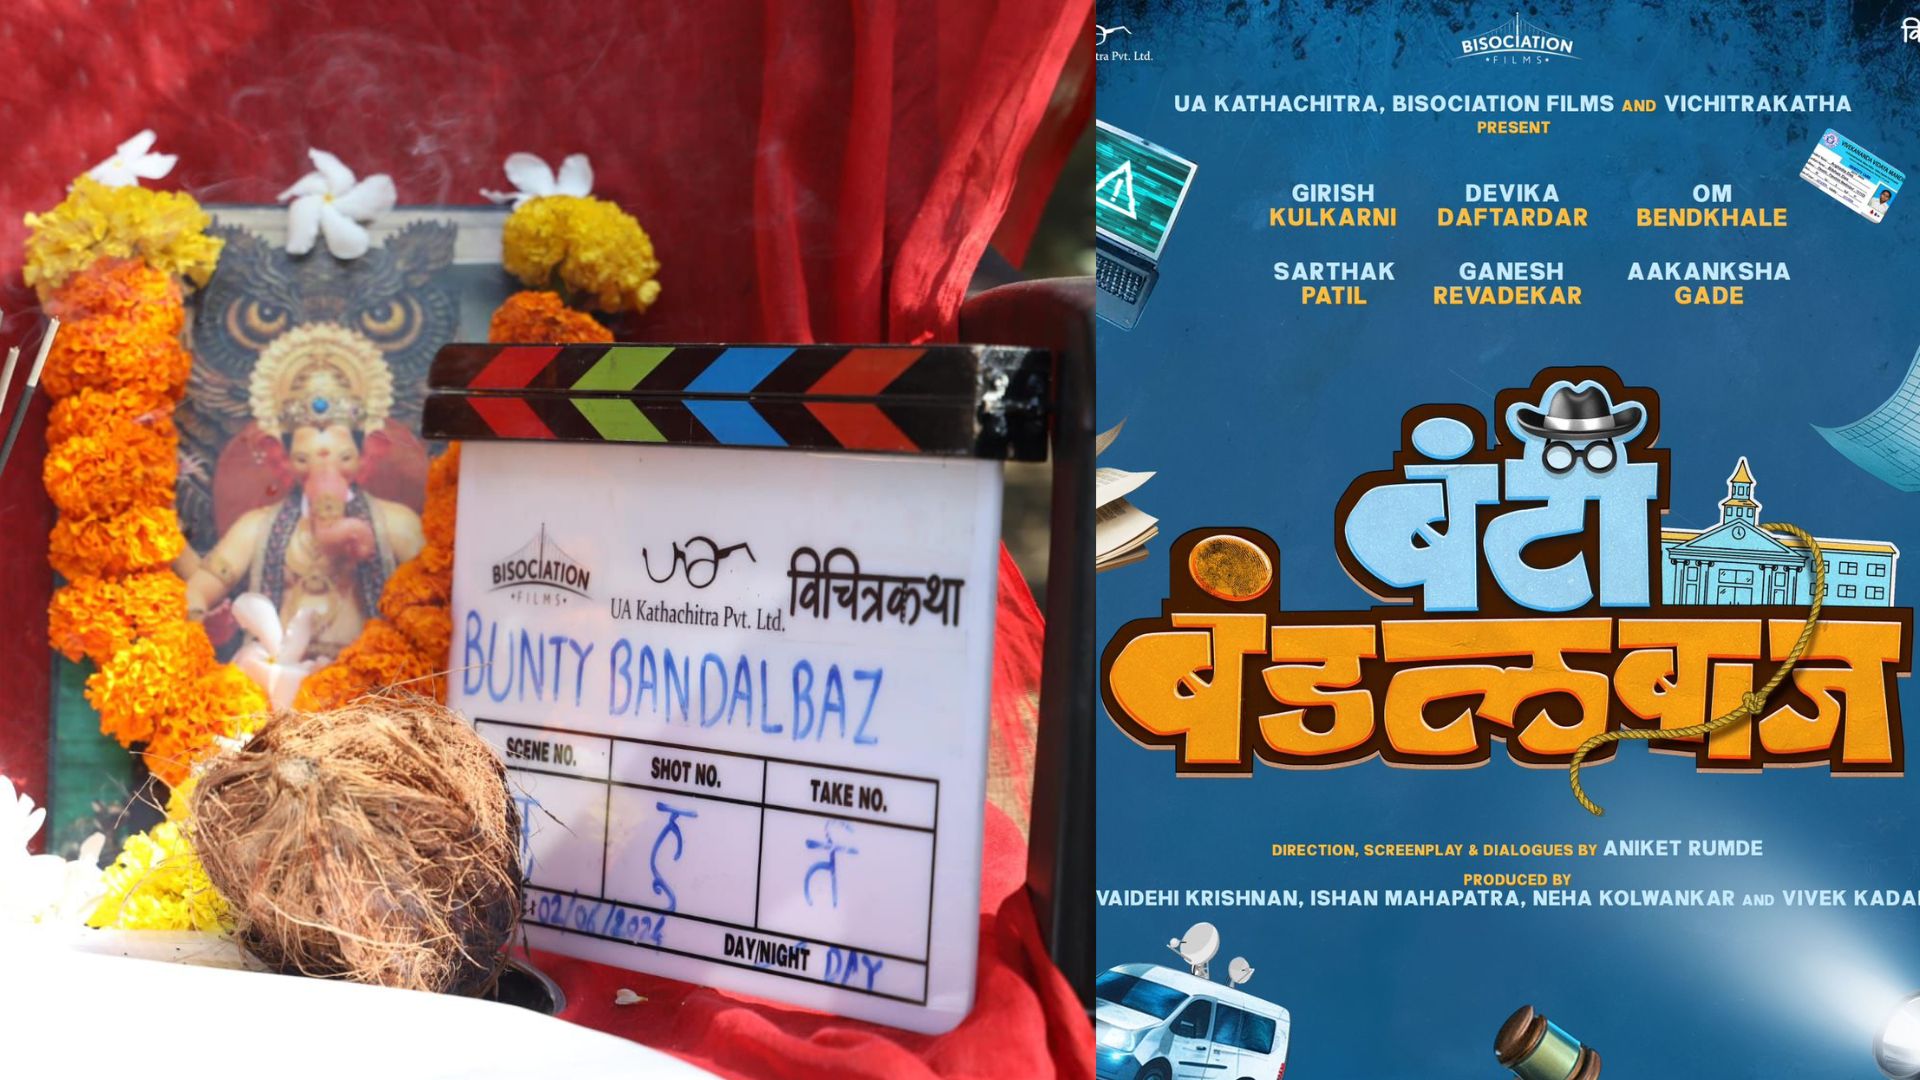 Bunty Bundalbaaz: विद्यार्थ्यांवर आधारित ‘बंटी बंडलबाज’ चित्रपट लवकरच प्रेक्षकांच्या भेटीला